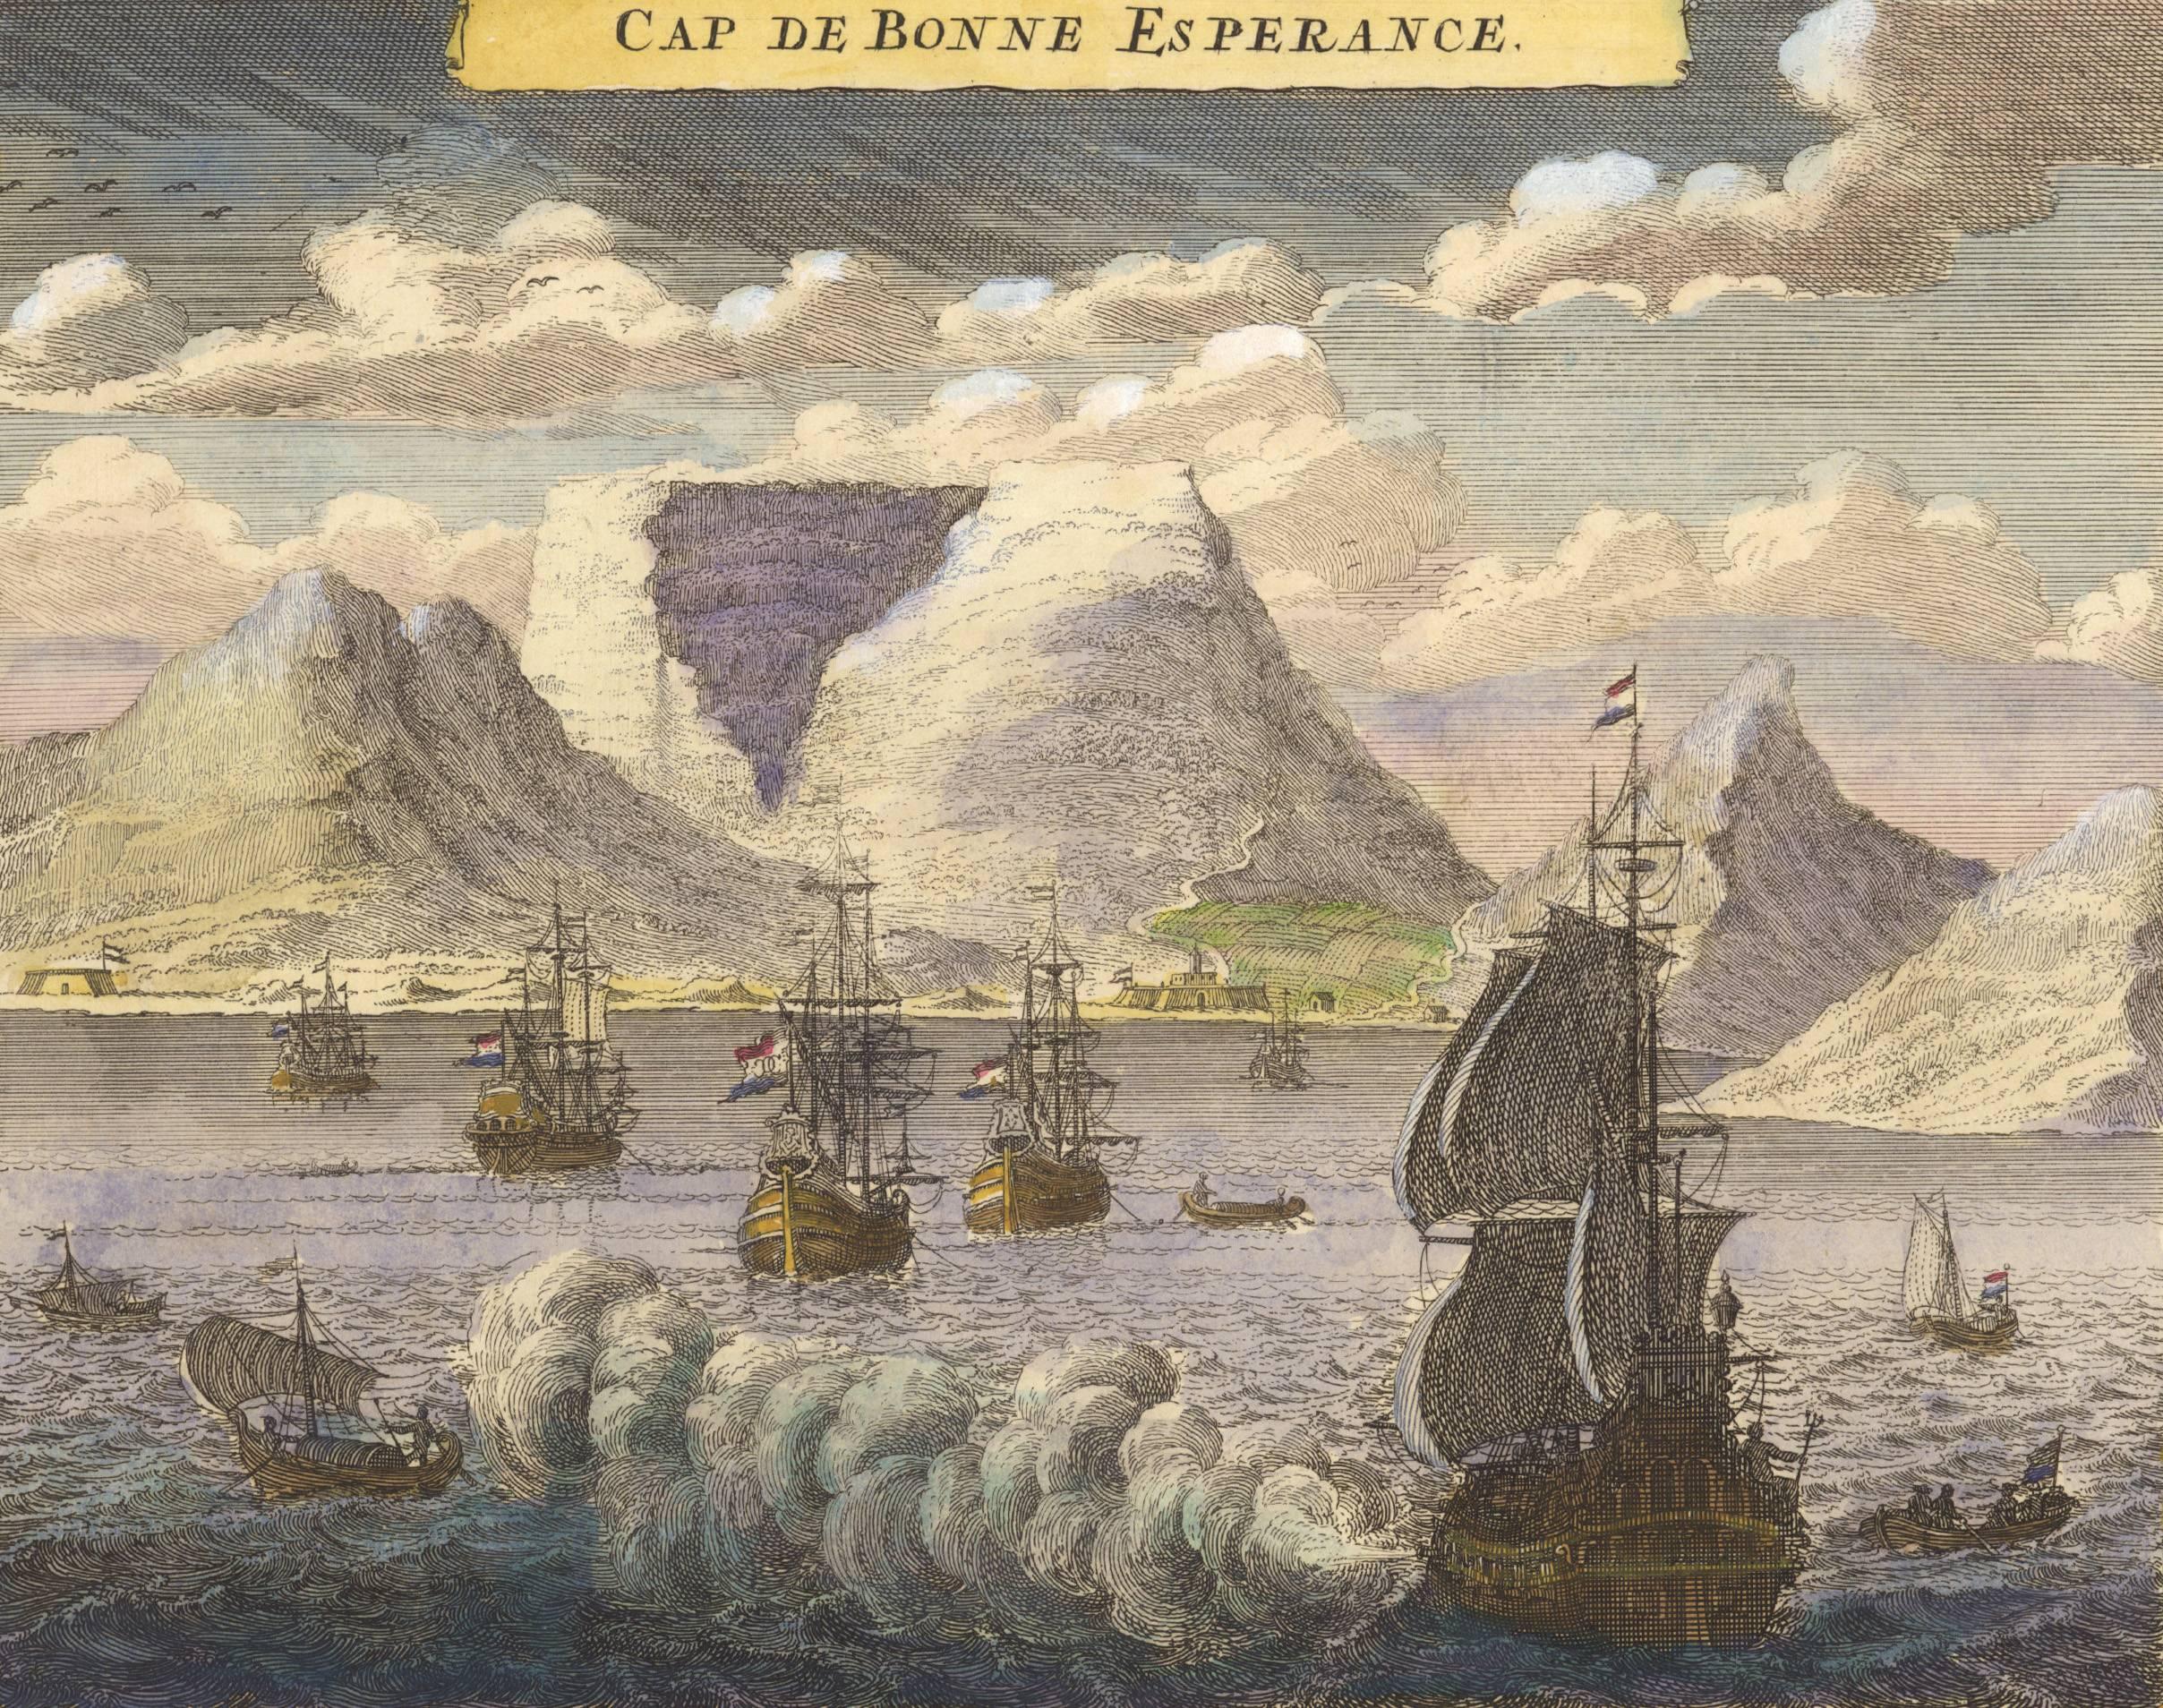 Vue and Description Du Cap De Bonne Esperance - Print by Henri-Abraham Chatelain